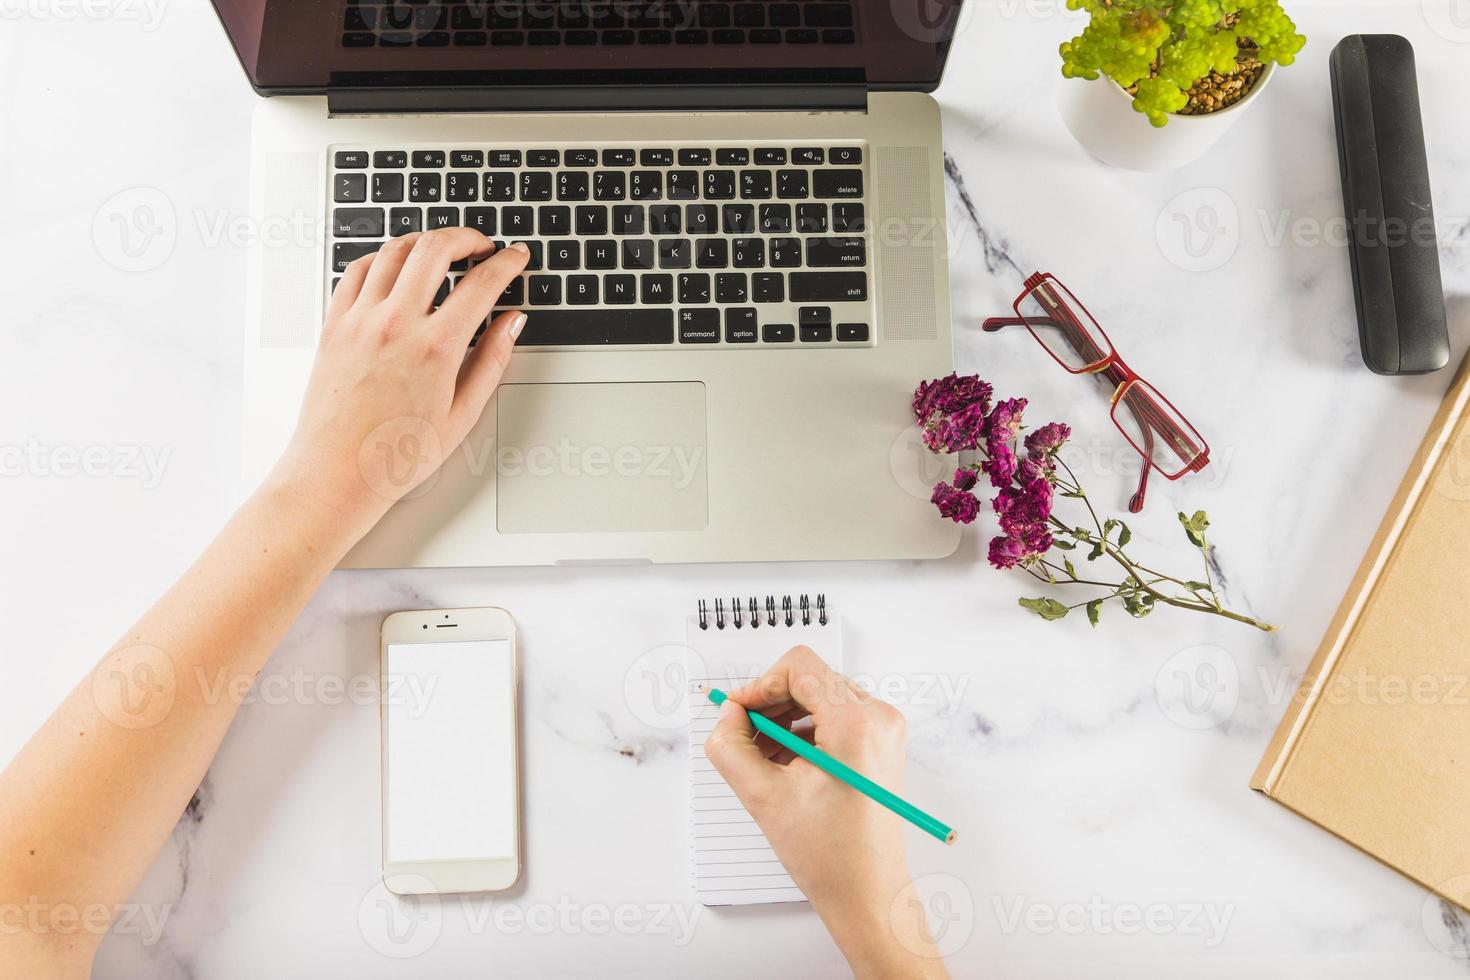 ritaglia le mani usando il laptop per prendere appunti sul tavolo di marmo foto